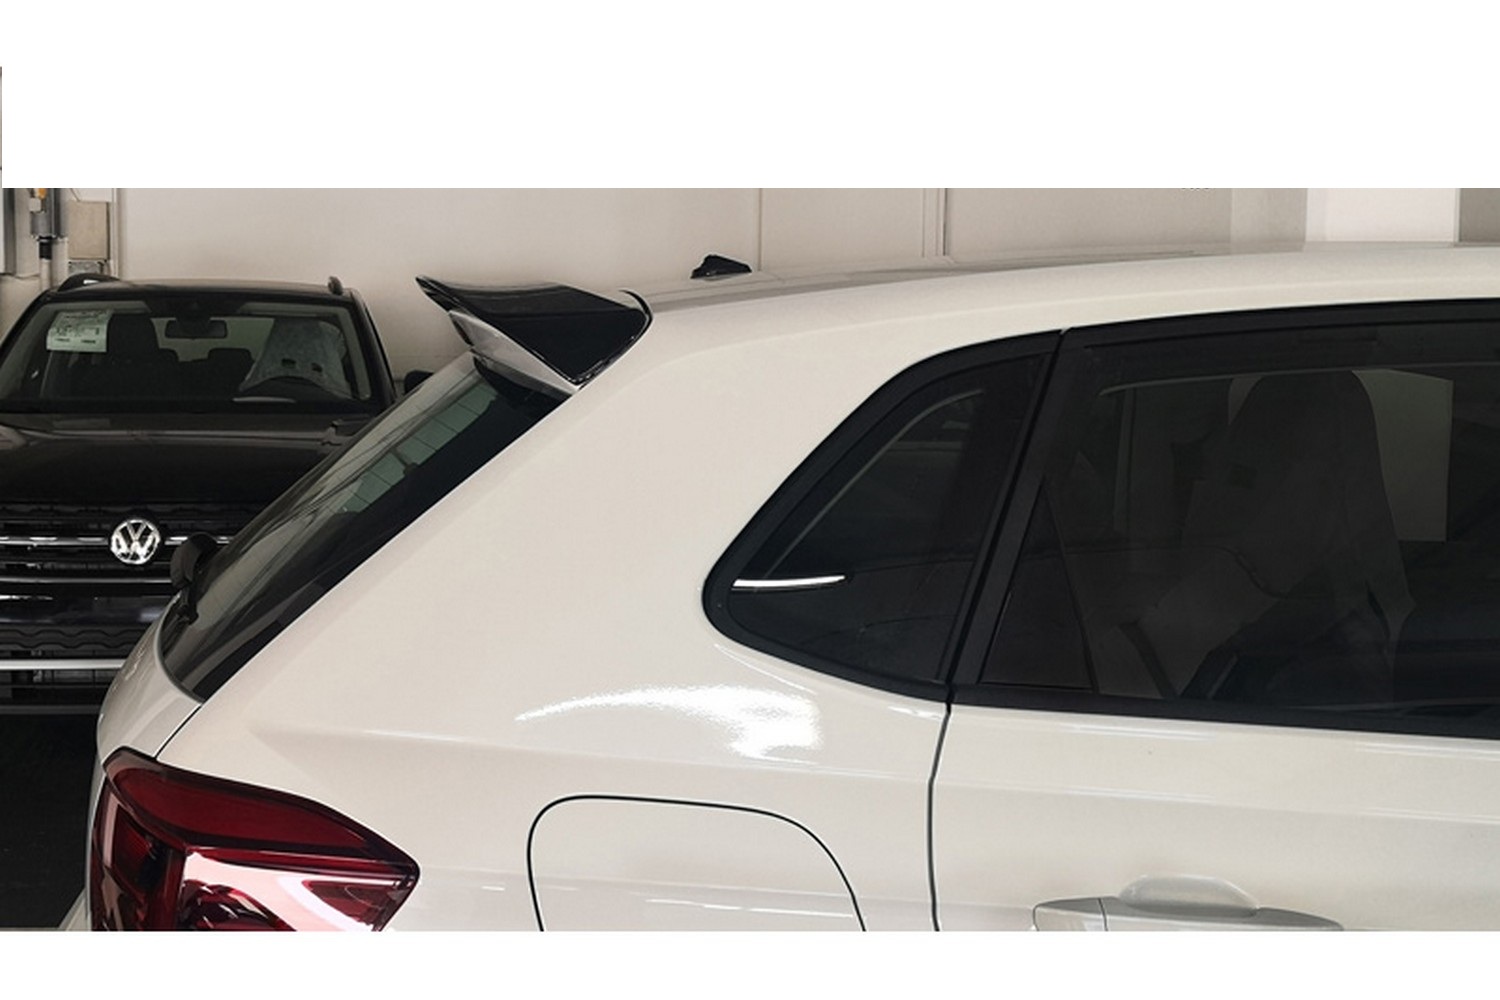 https://www.carparts-expert.com/images/stories/virtuemart/product/vw8posu-volkswagen-polo-vi-aw-2017-5-door-hatchback-roof-spoiler-1.jpg